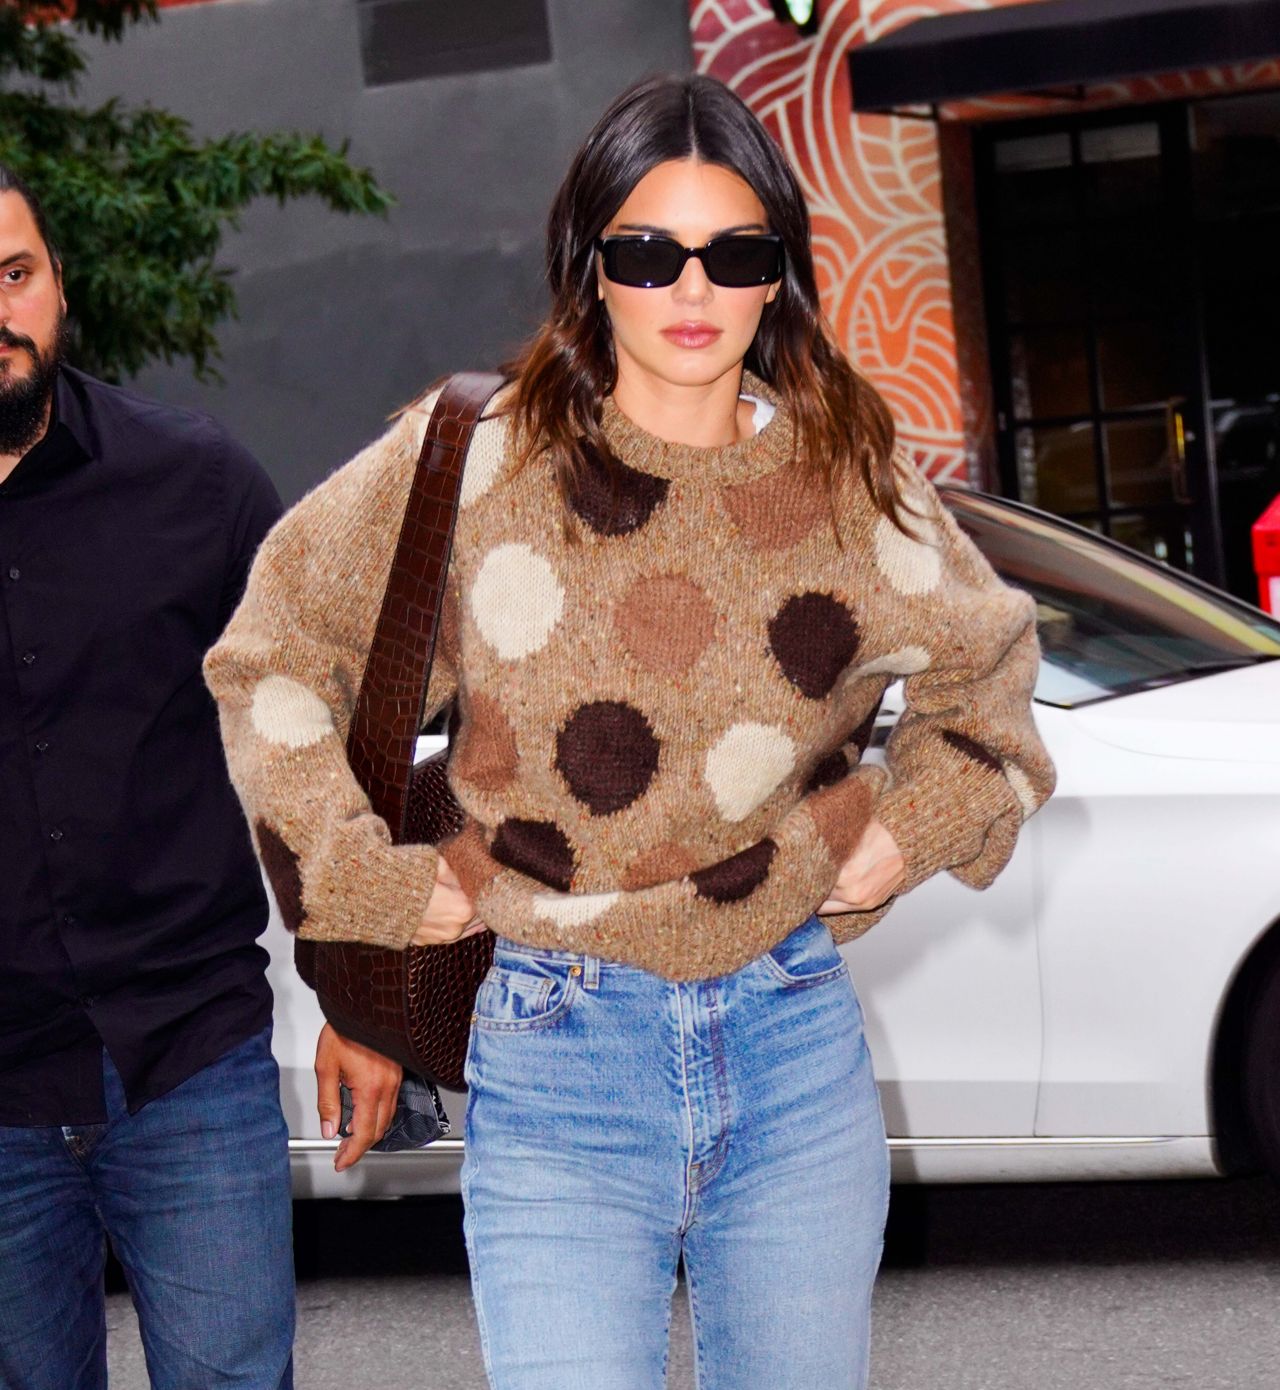 Kendall Jenner New York City November 20, 2019 – Star Style